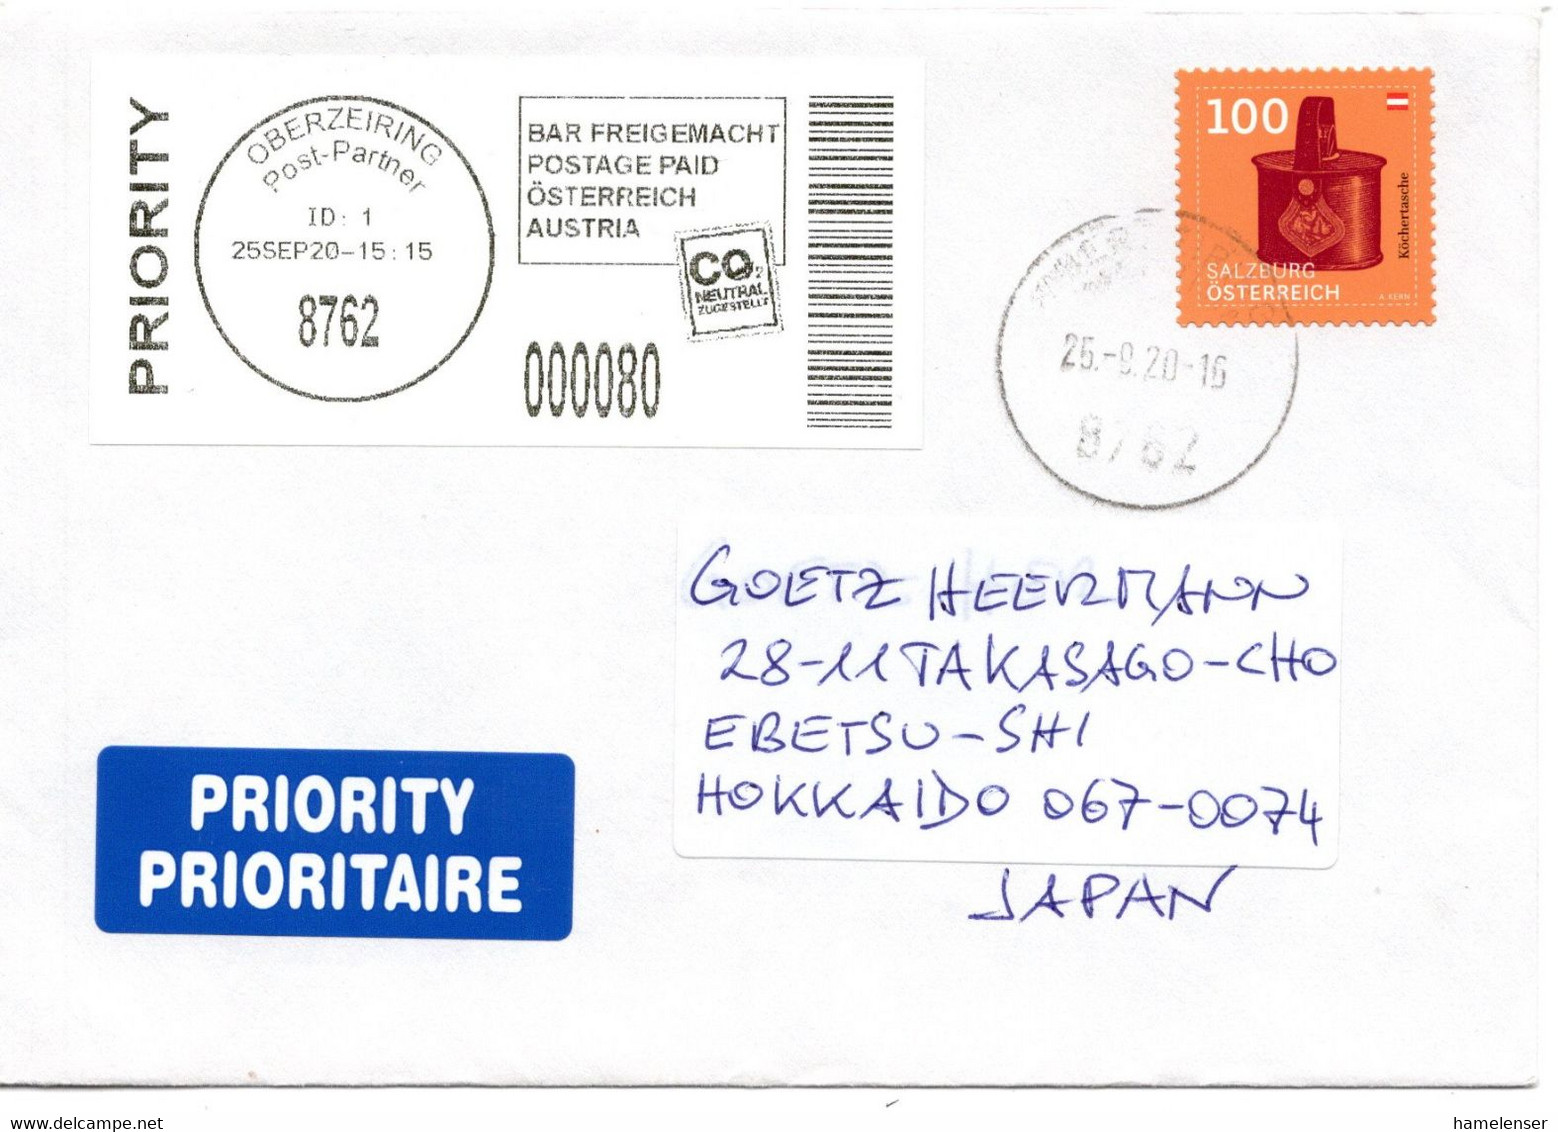 59244 - Österreich - 2020 - 100c Koechertasche MiF A LpBf OBERZEIRING POST-PARTNER -> Japan - Briefe U. Dokumente